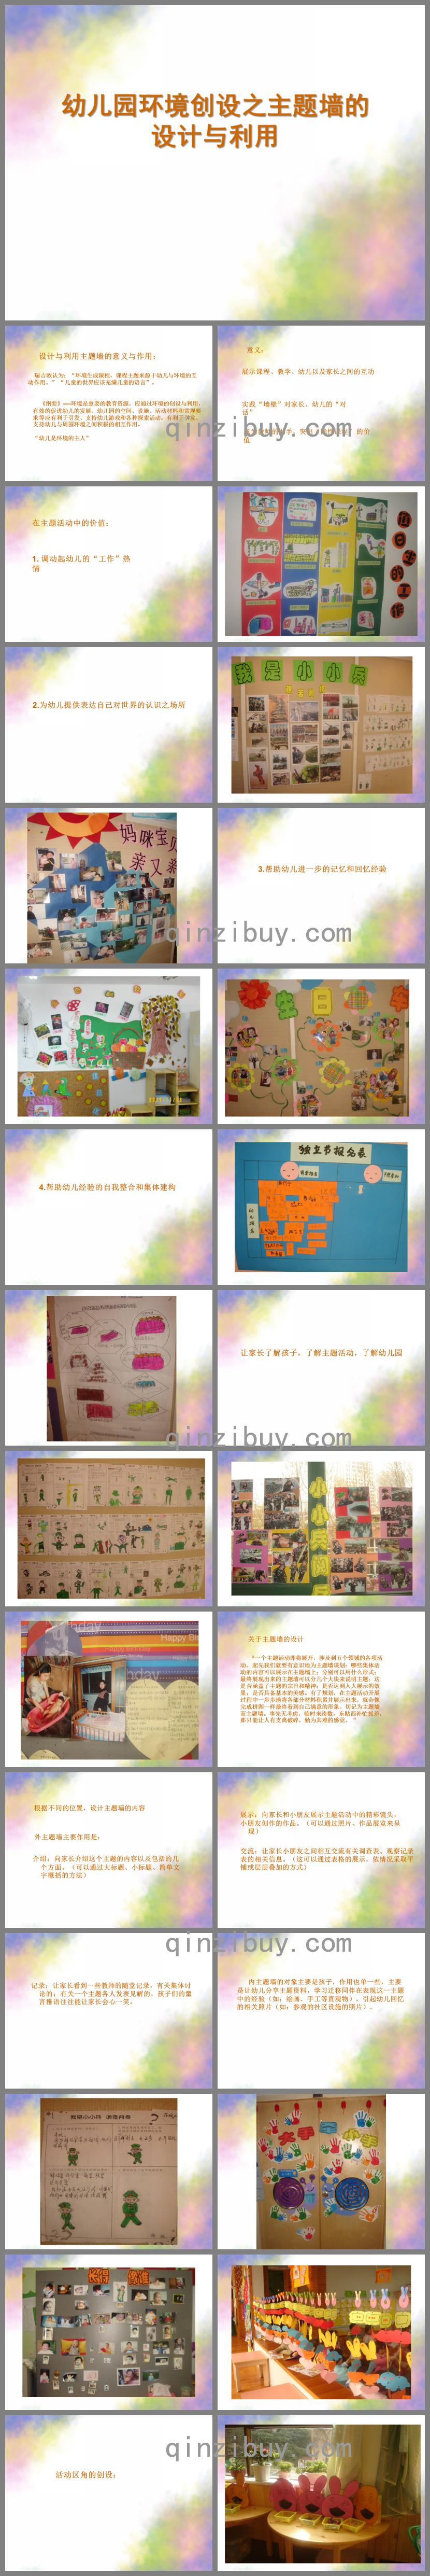 幼儿园环境创设之主题墙的设计与利用PPT课件